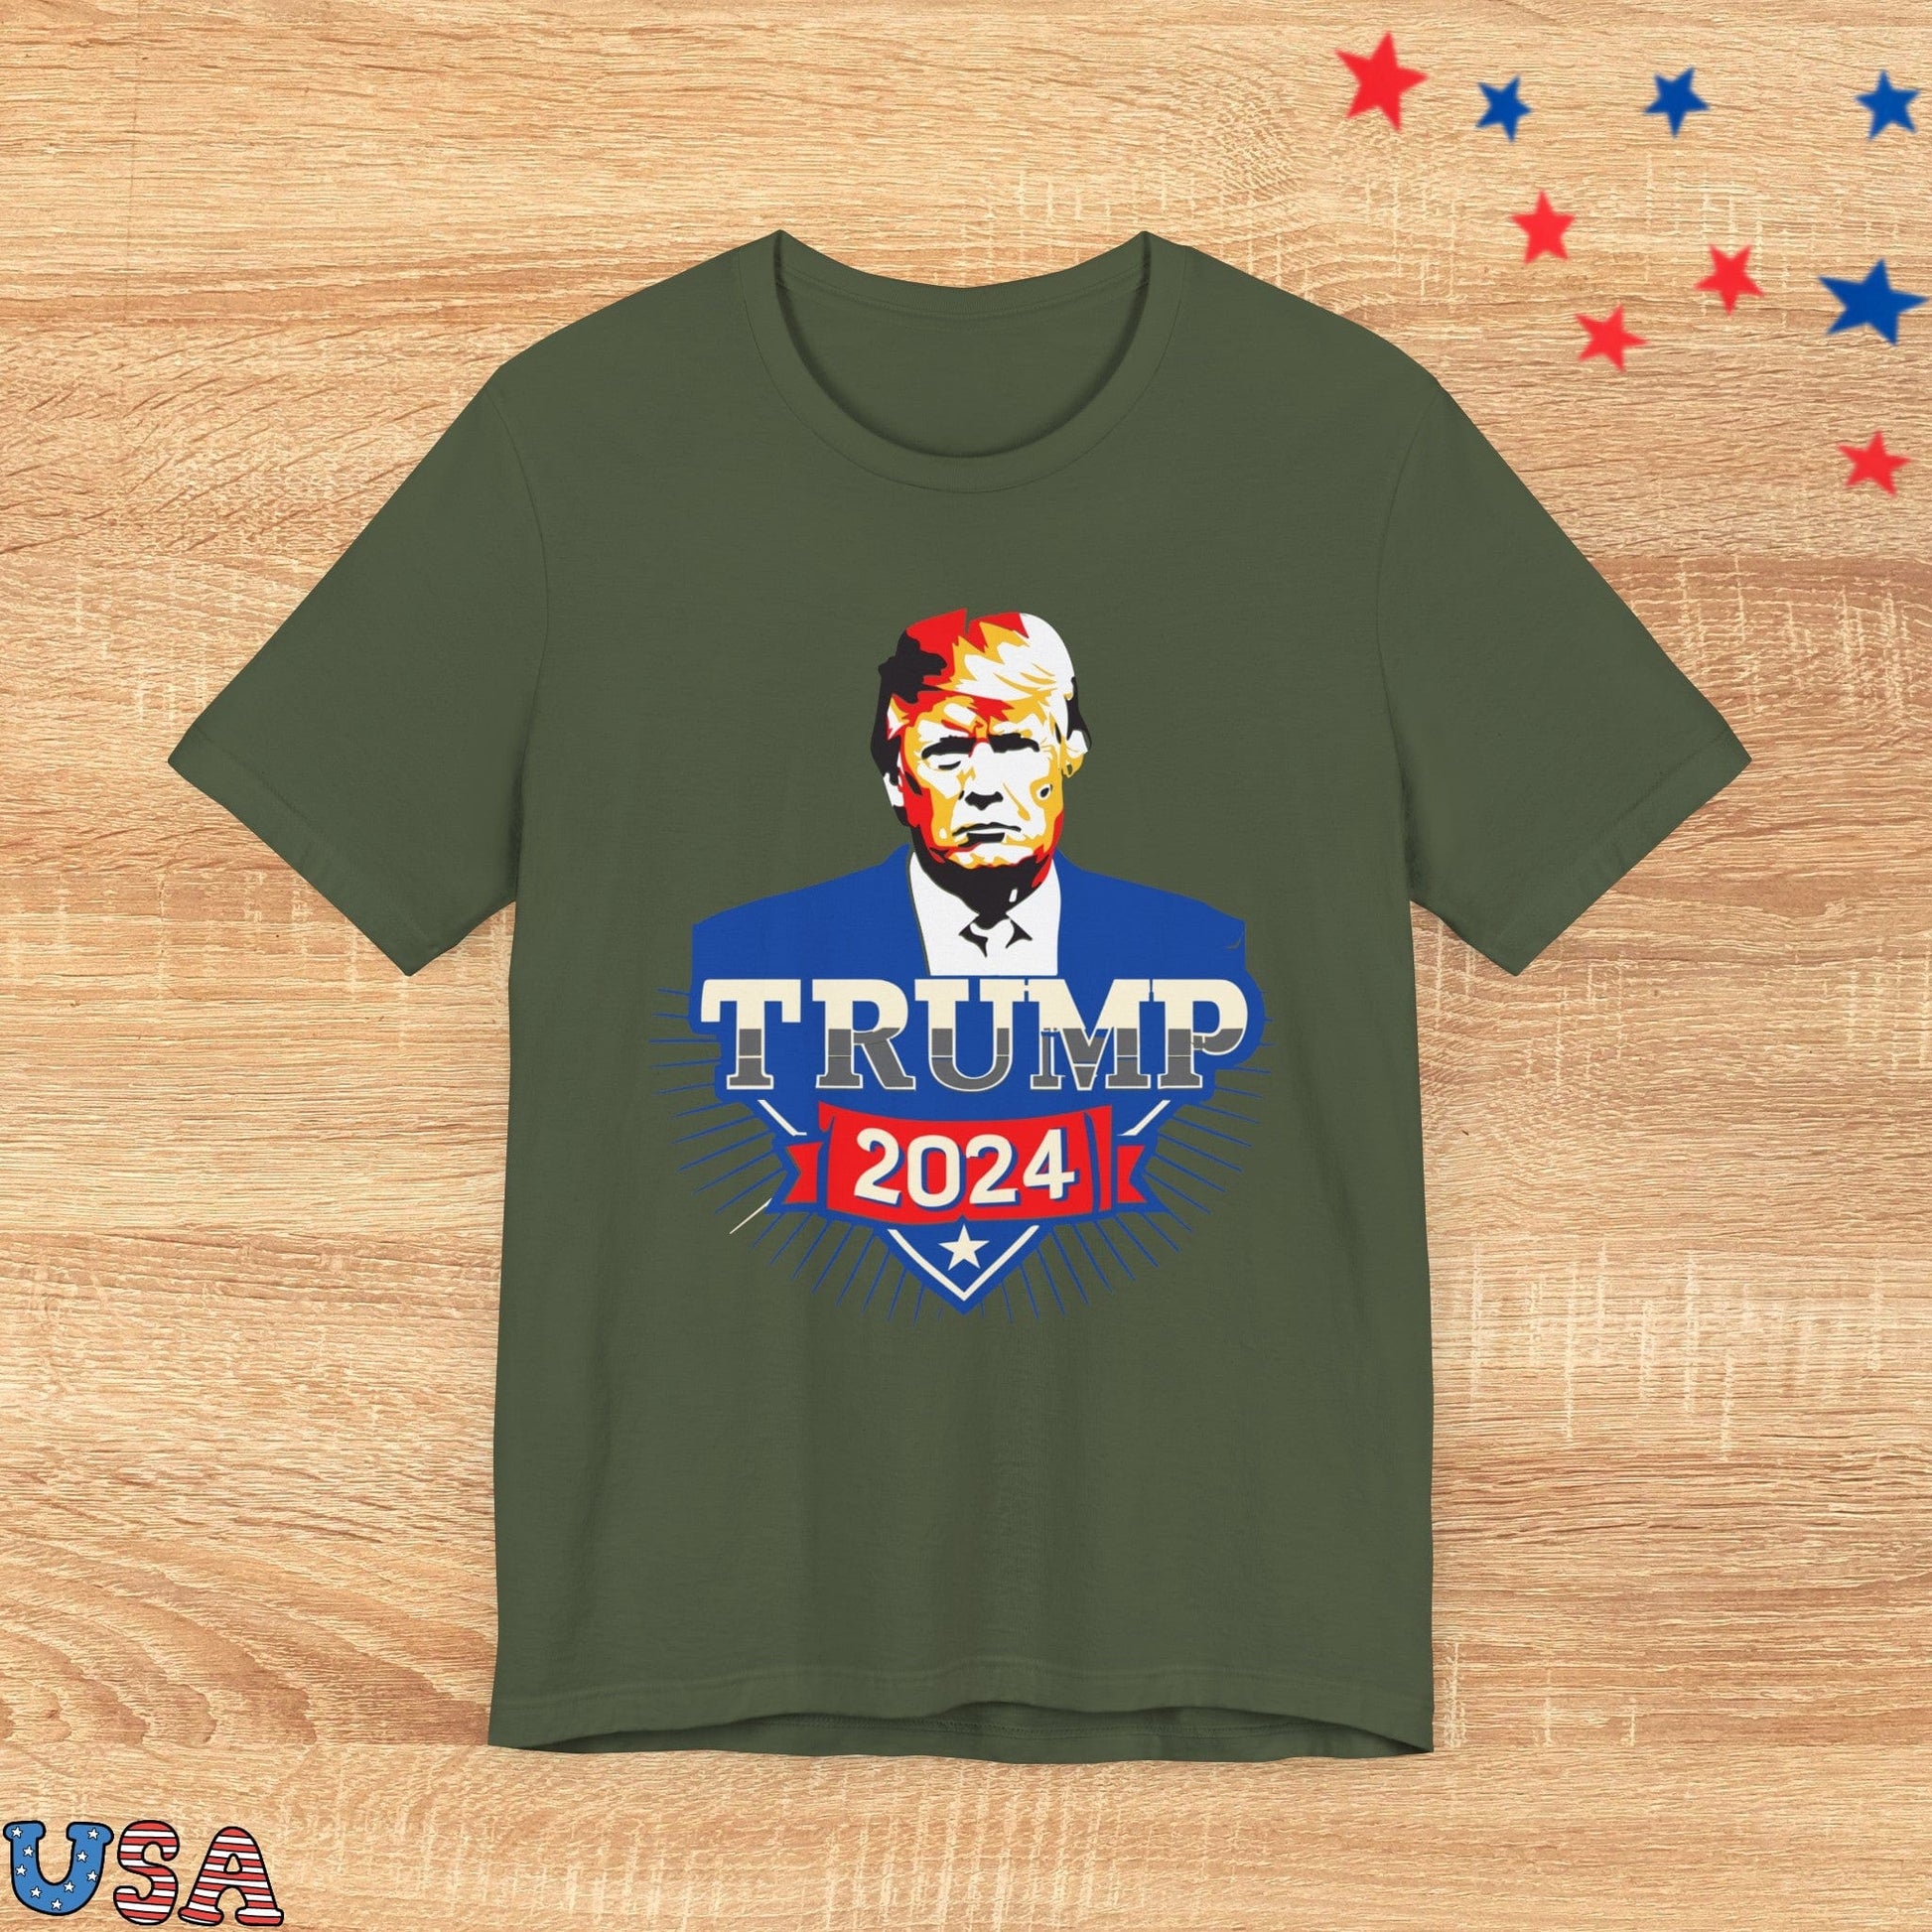 patriotic stars T-Shirt Military Green / XS Trump 2024 Superman